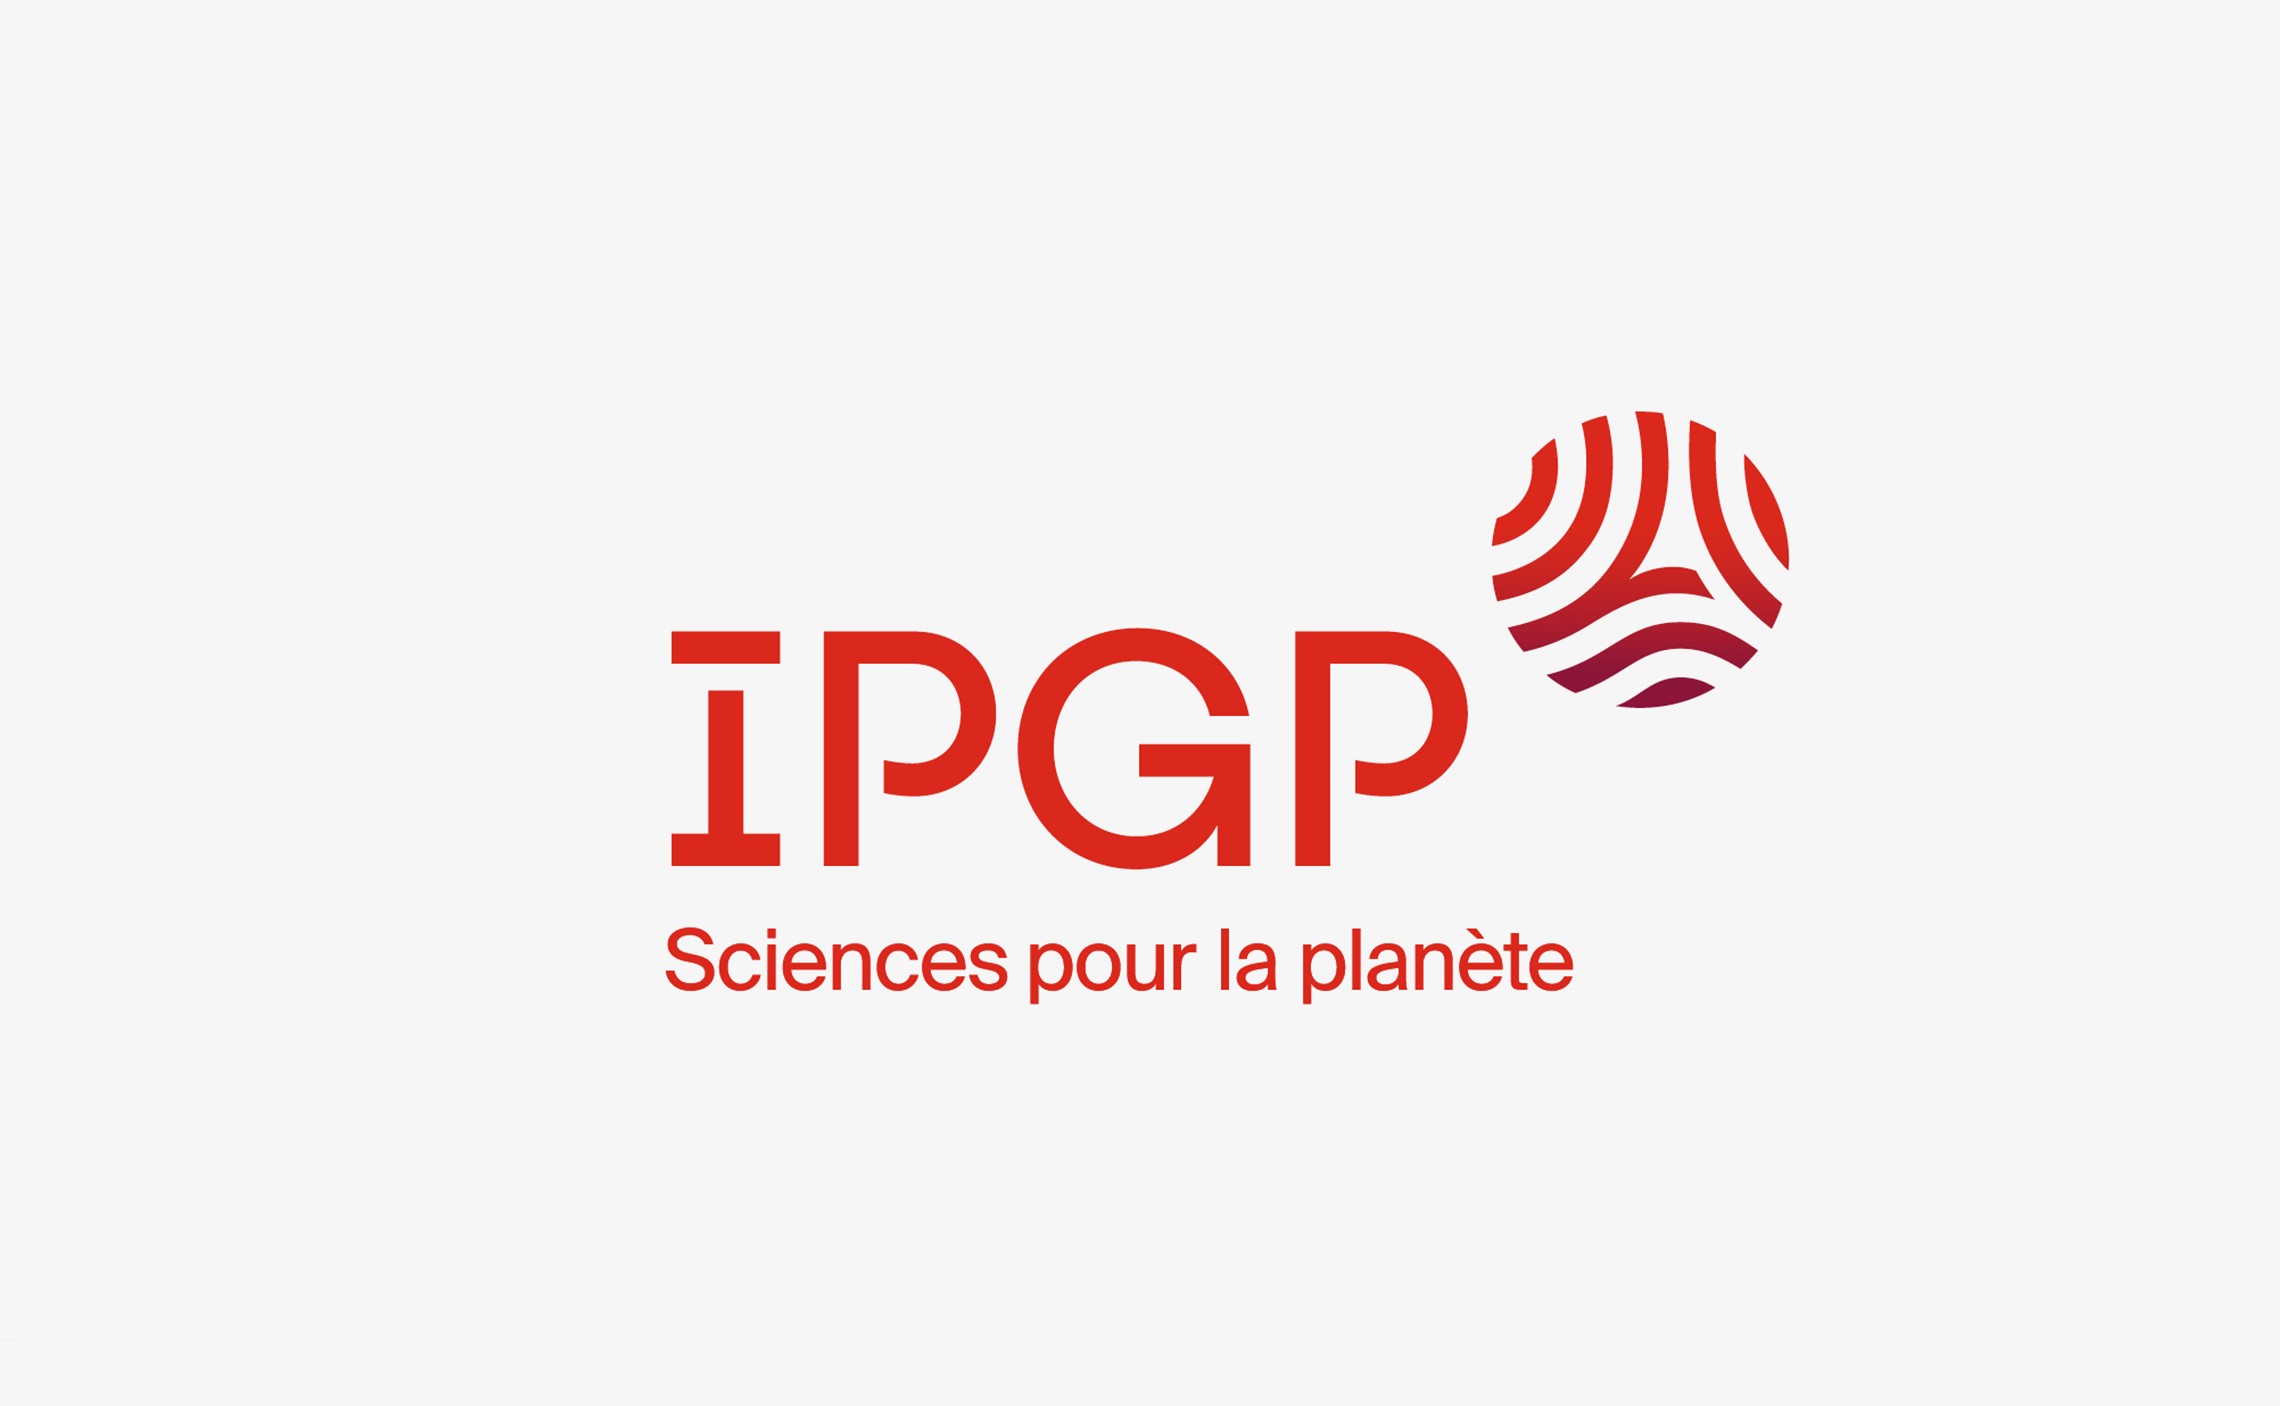 IPGP: Institut de physique du globe de Paris